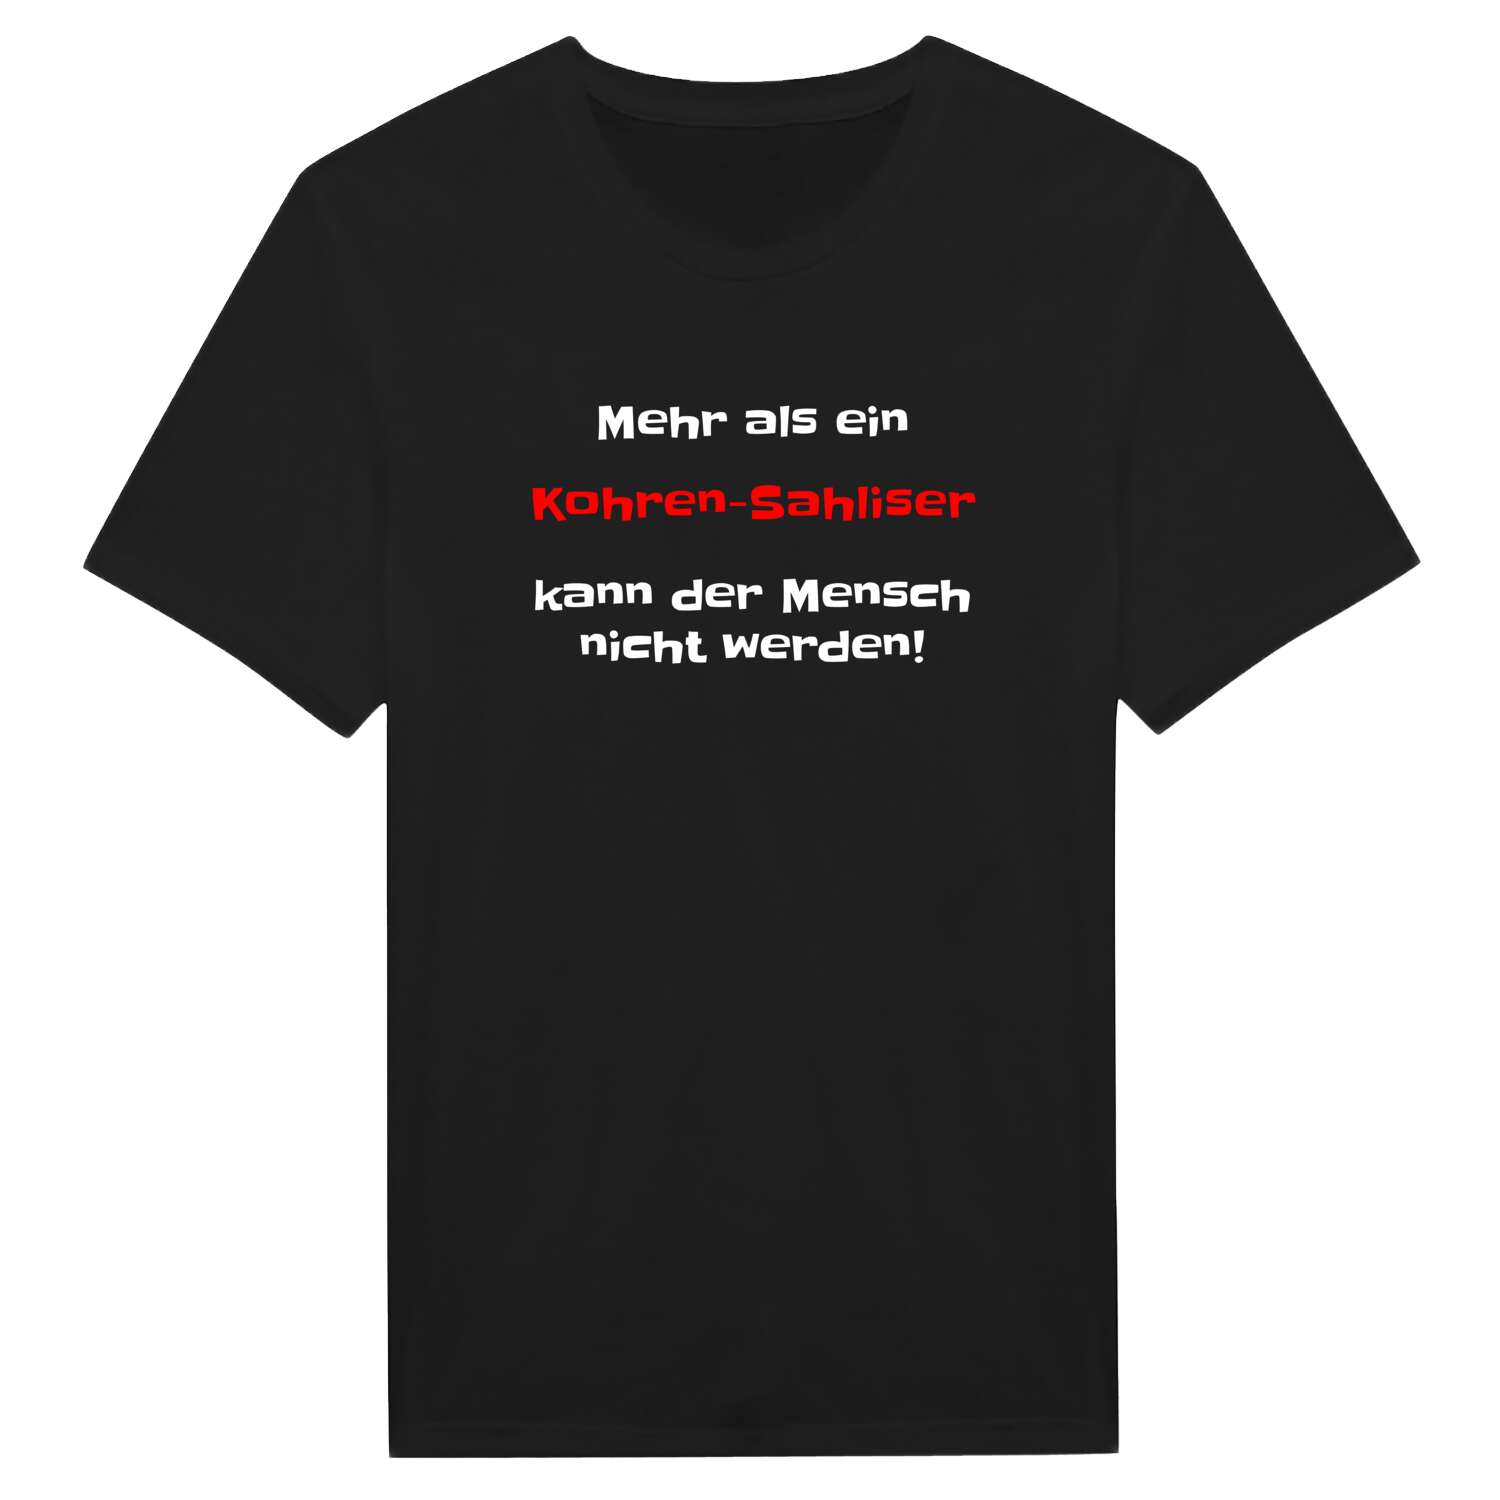 Kohren-Sahlis T-Shirt »Mehr als ein«